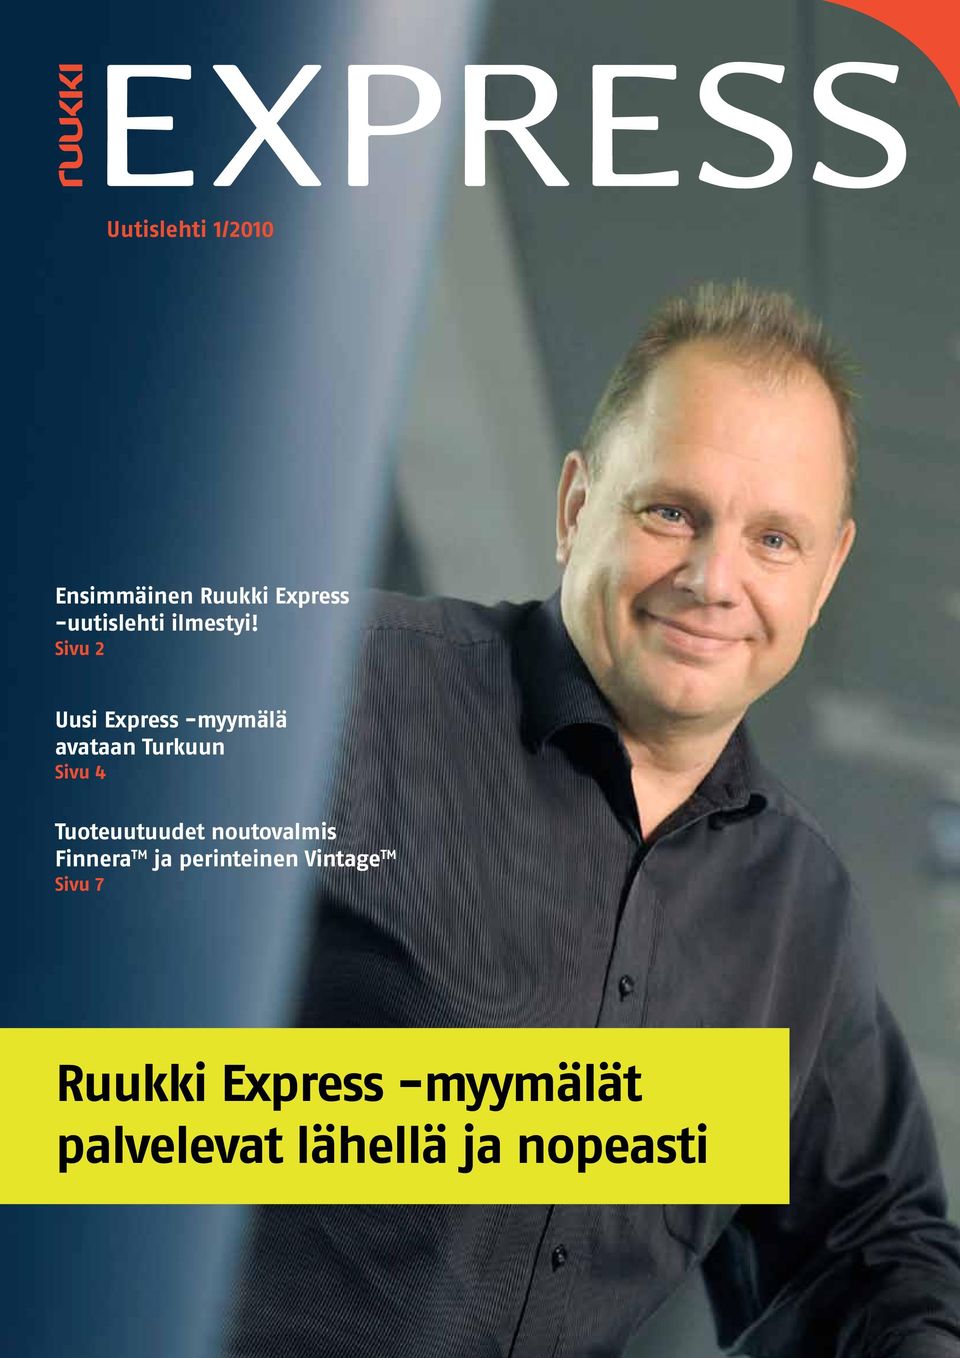 Sivu 2 Uusi Express -myymälä avataan Turkuun Sivu 4